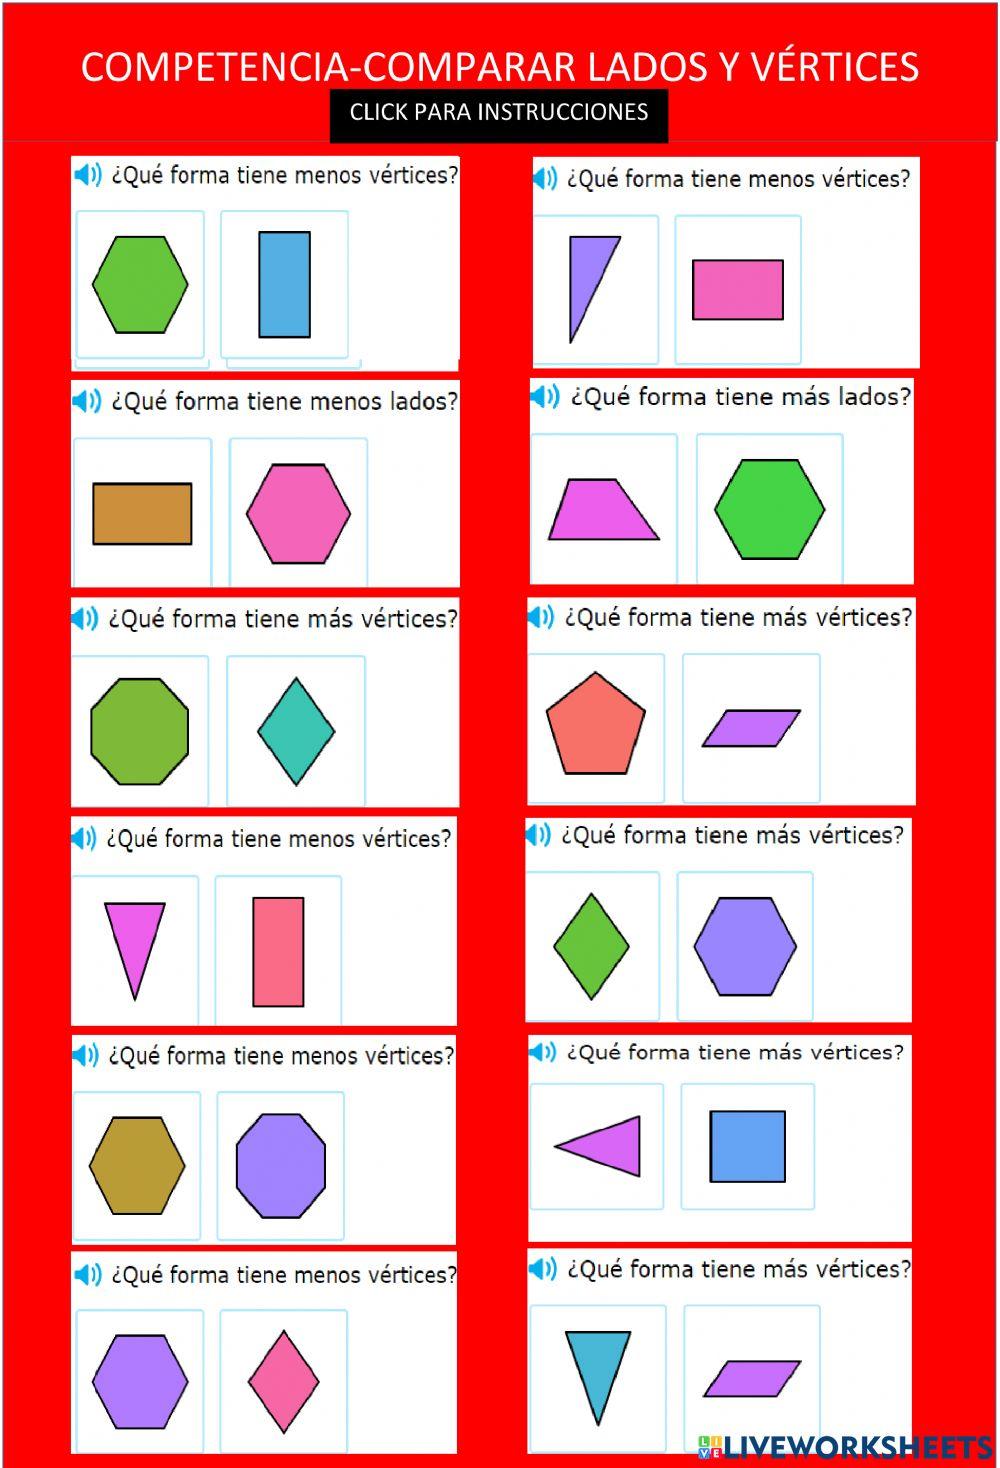 Comparar lados y vertices